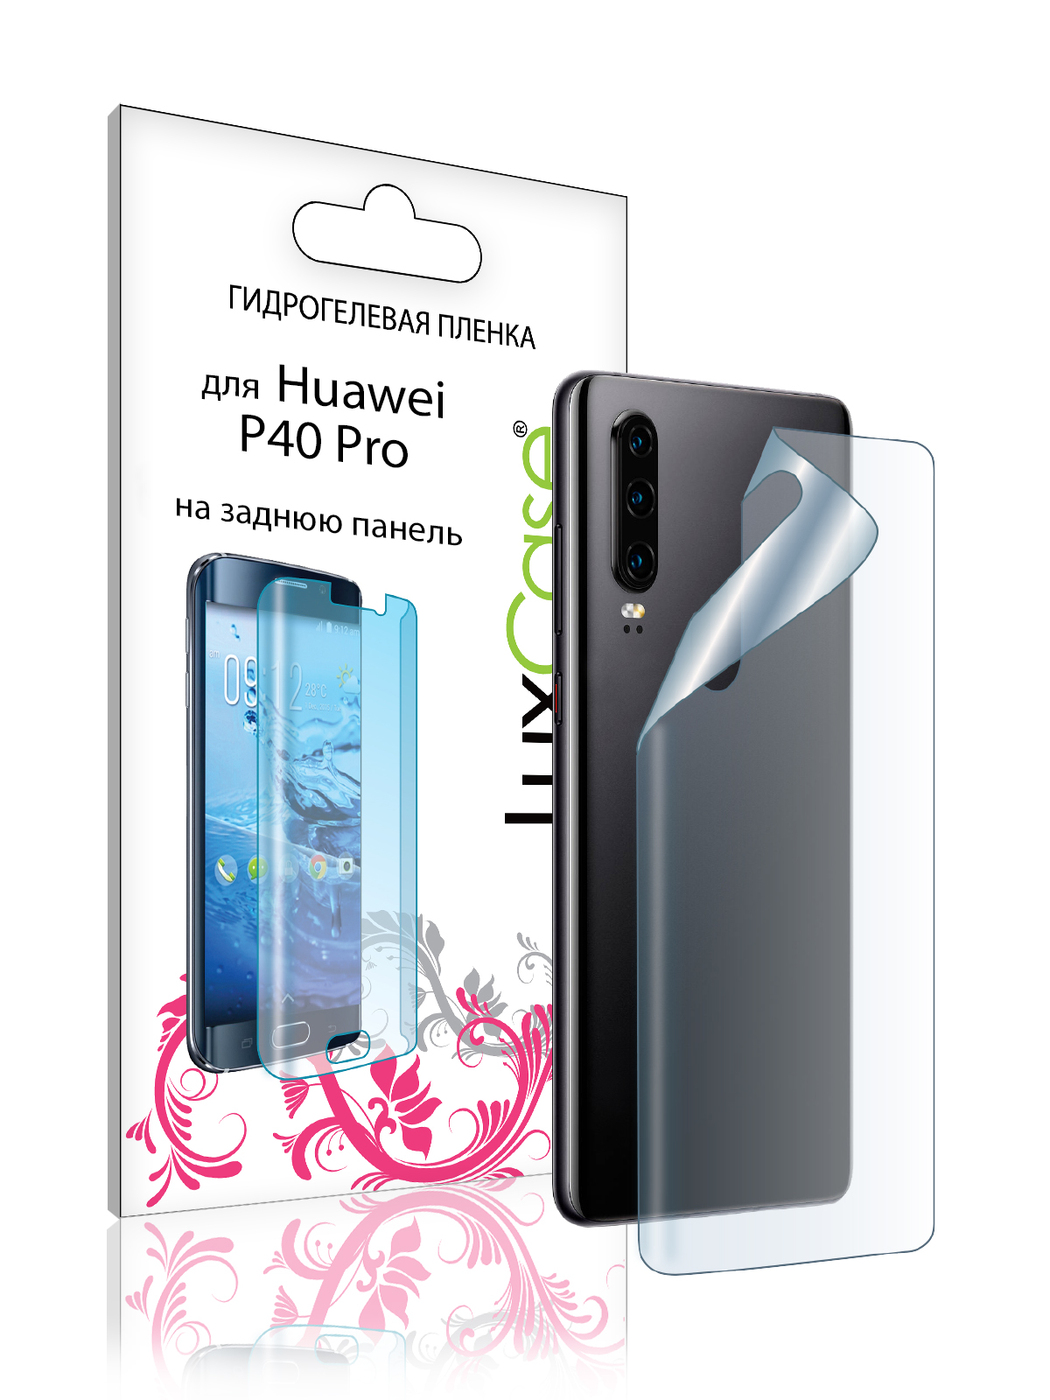 Защита задней крышки LuxCase для Huawei P40 Pro пленка 0.14mm Transparent 86125 цена и фото